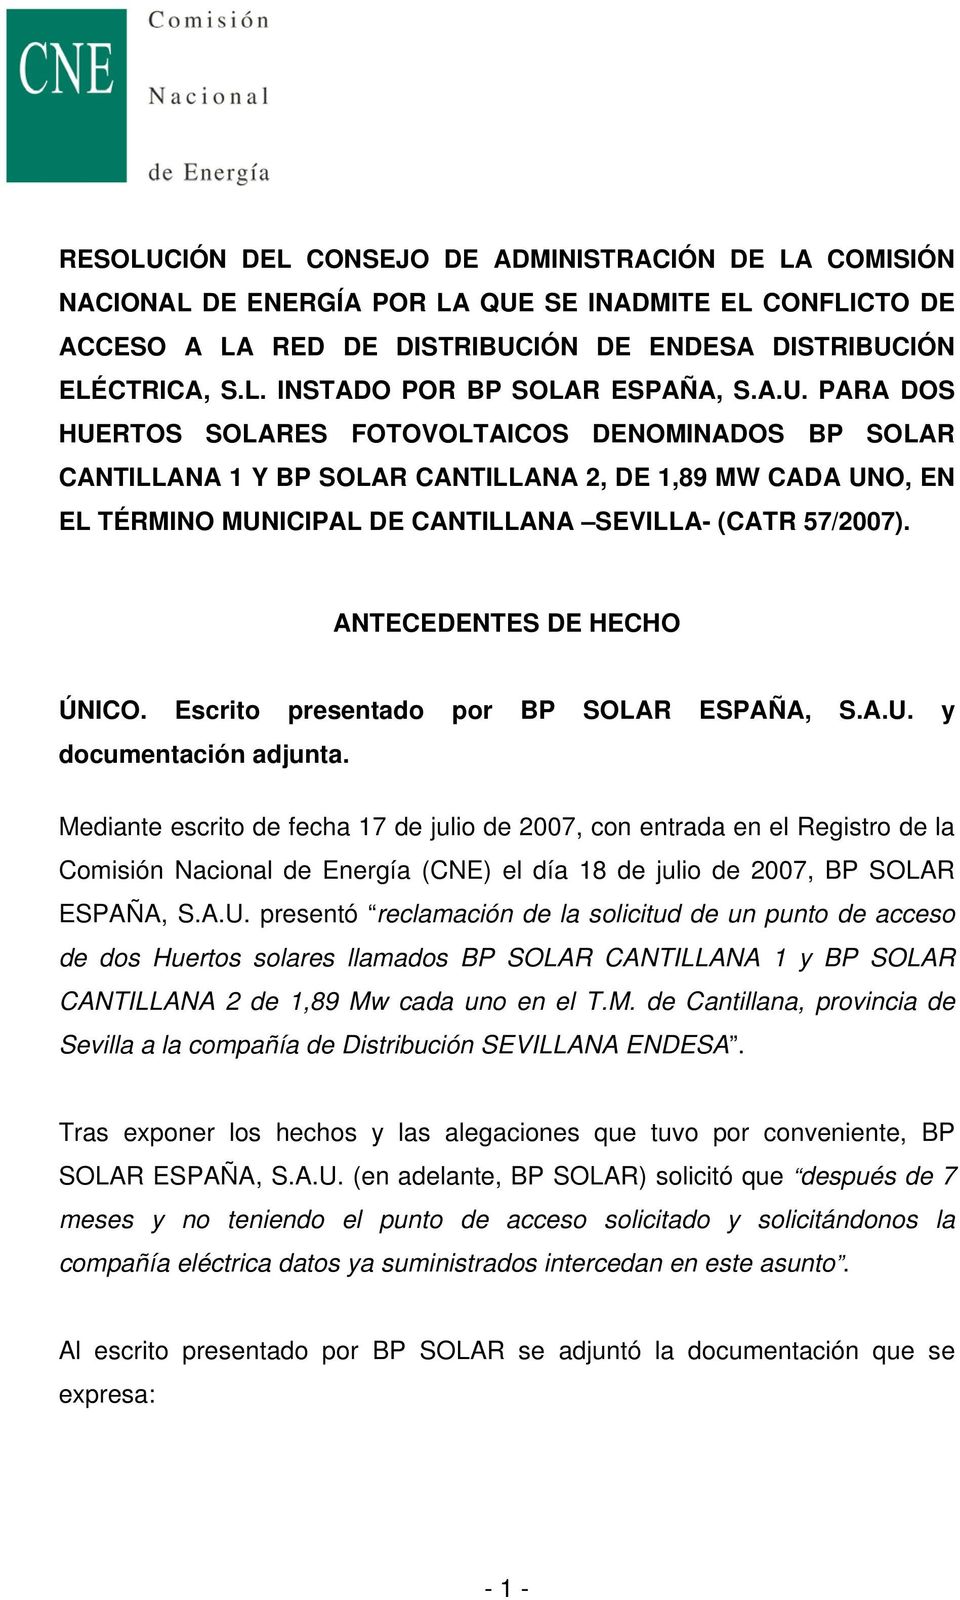 ANTECEDENTES DE HECHO ÚNICO. Escrito presentado por BP SOLAR ESPAÑA, S.A.U. y documentación adjunta.